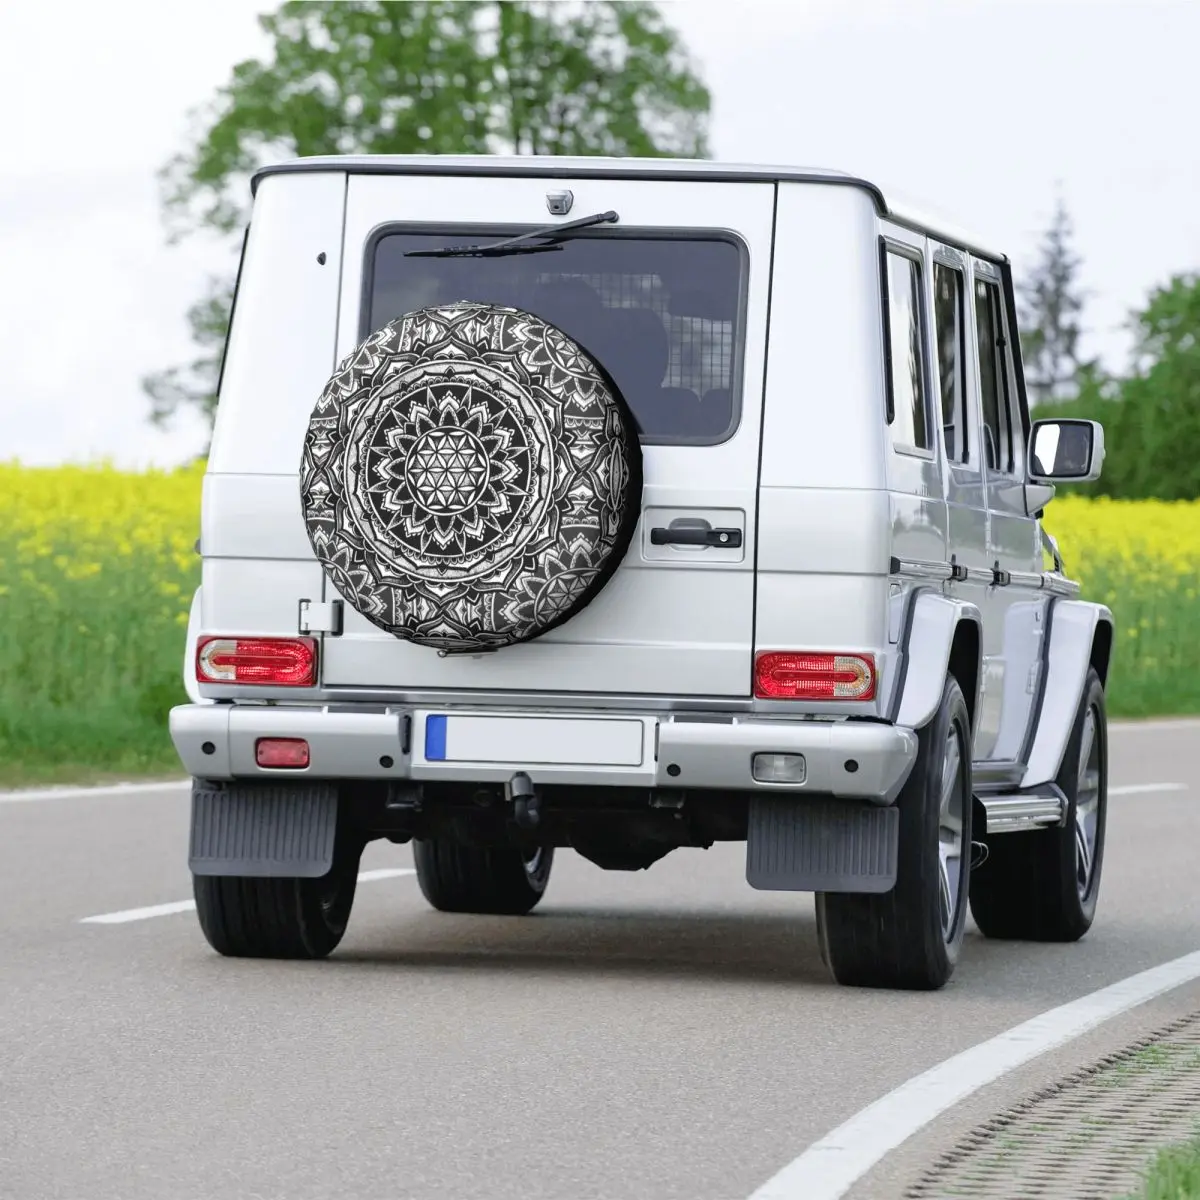 Чехол для запасного колеса Jeep Pajero с изображением Мандалы Сакральной Геометрии, изготовленный на заказ Цветок Жизни, Геометрические чехлы для автомобильных колес 14 